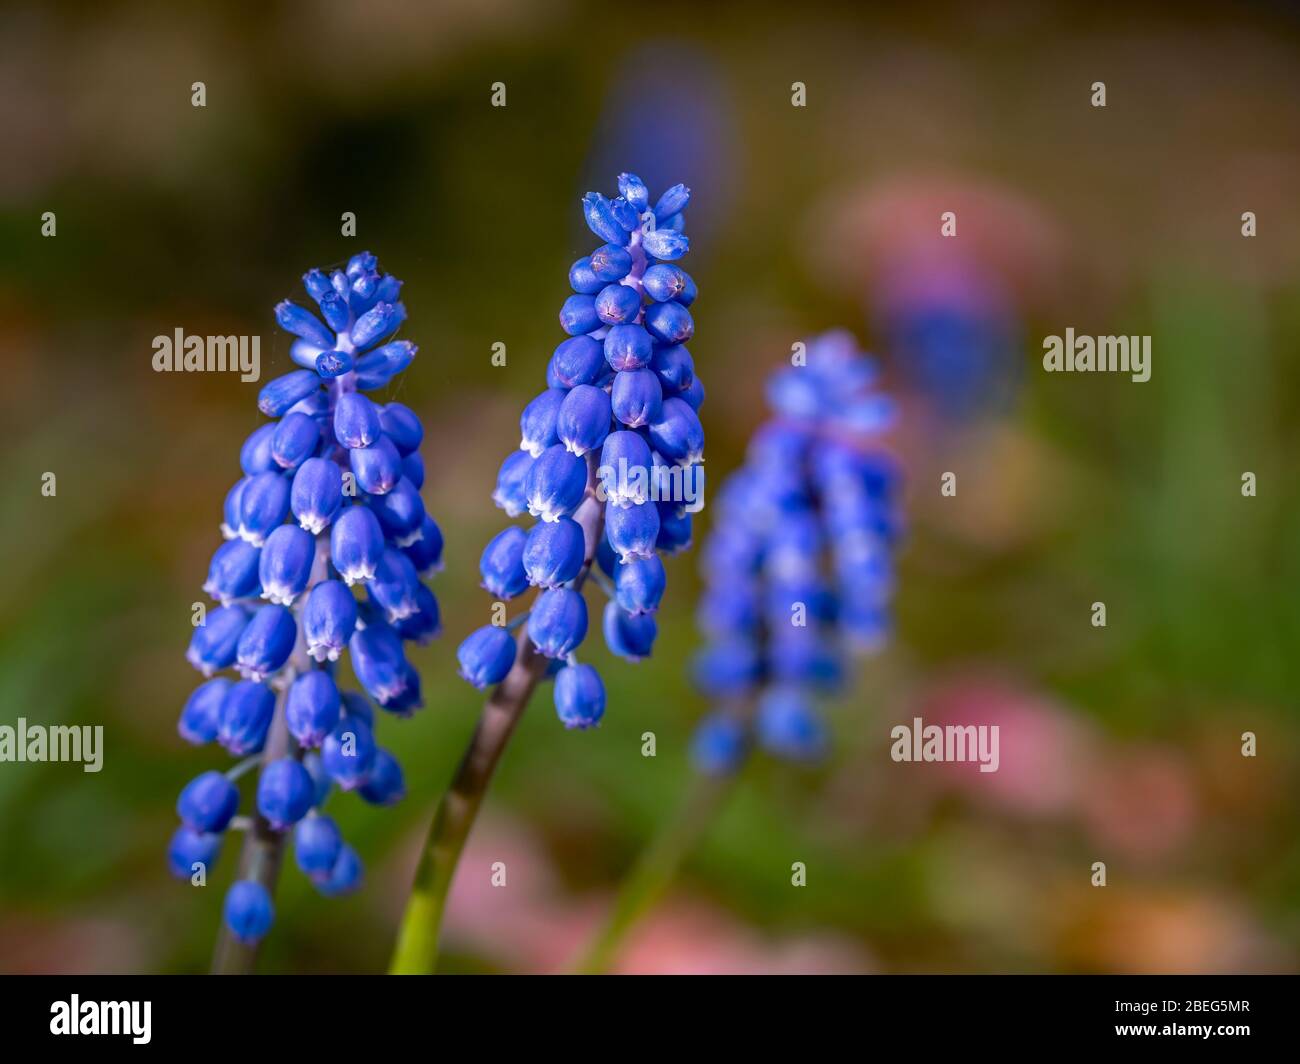 Nahaufnahme und selektiver Fokus auf einem blauen Traubenhyazinthe (Muscari) Blütenkopf vor einem unscharfen Hintergrund Stockfoto